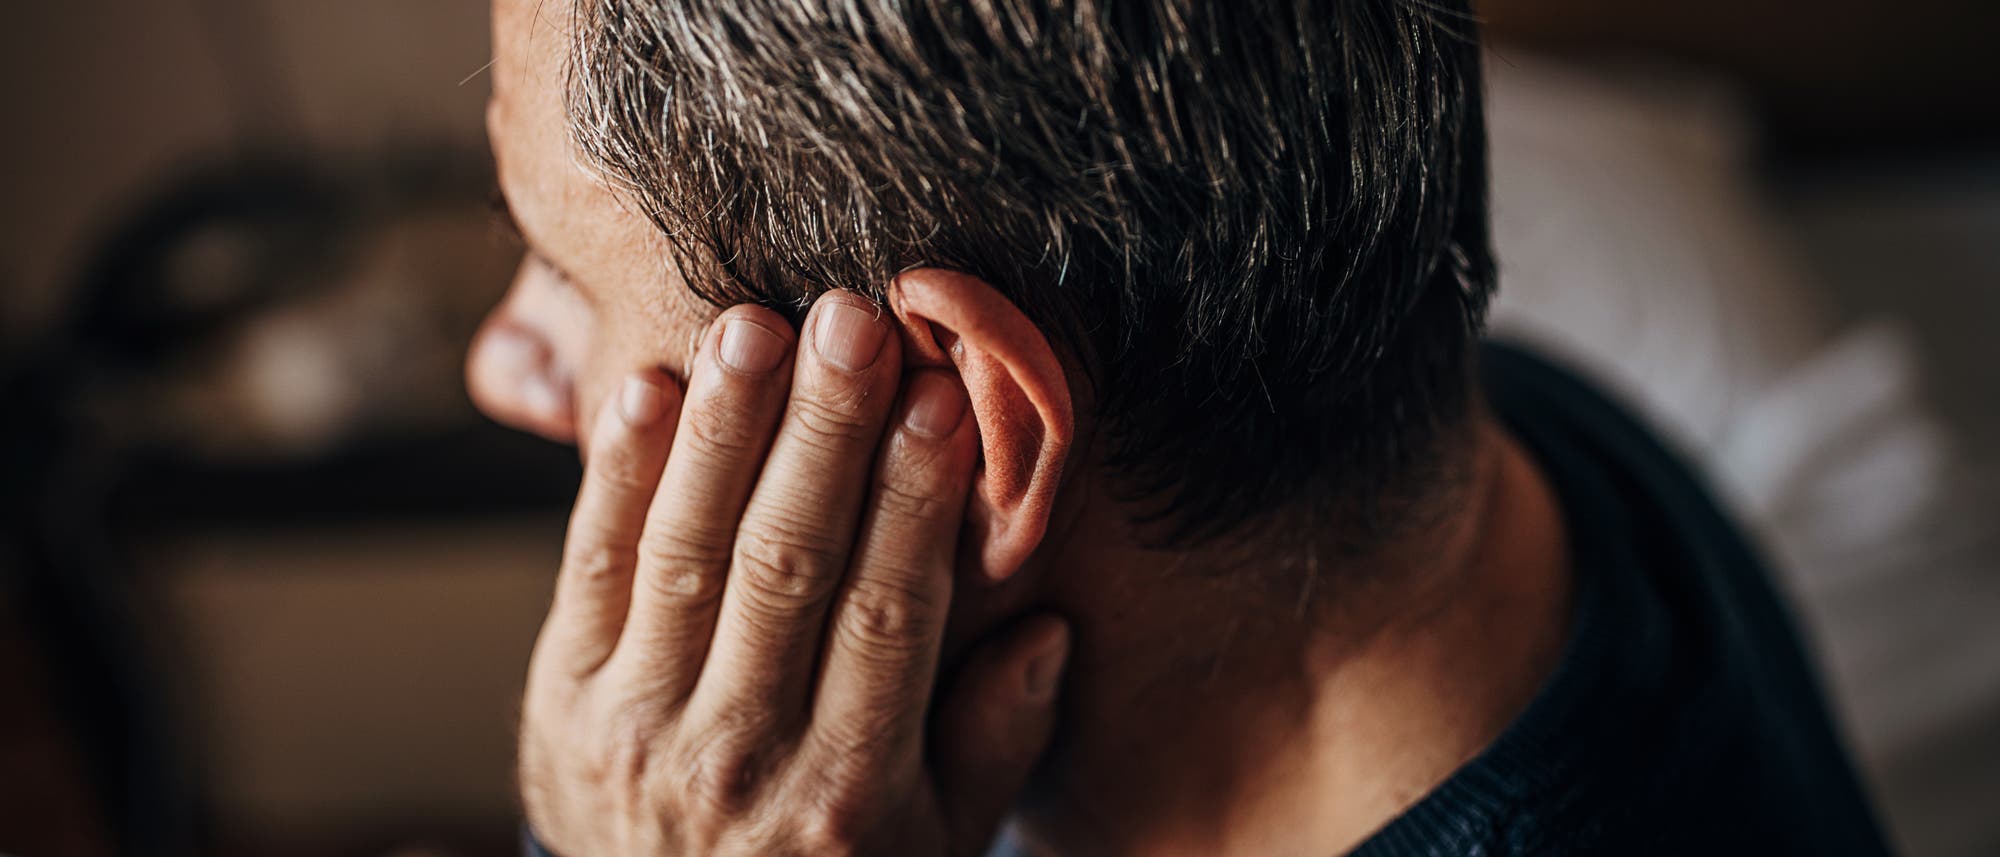 Ein Mann hält sich wegen Schmerzen das Ohr zu.